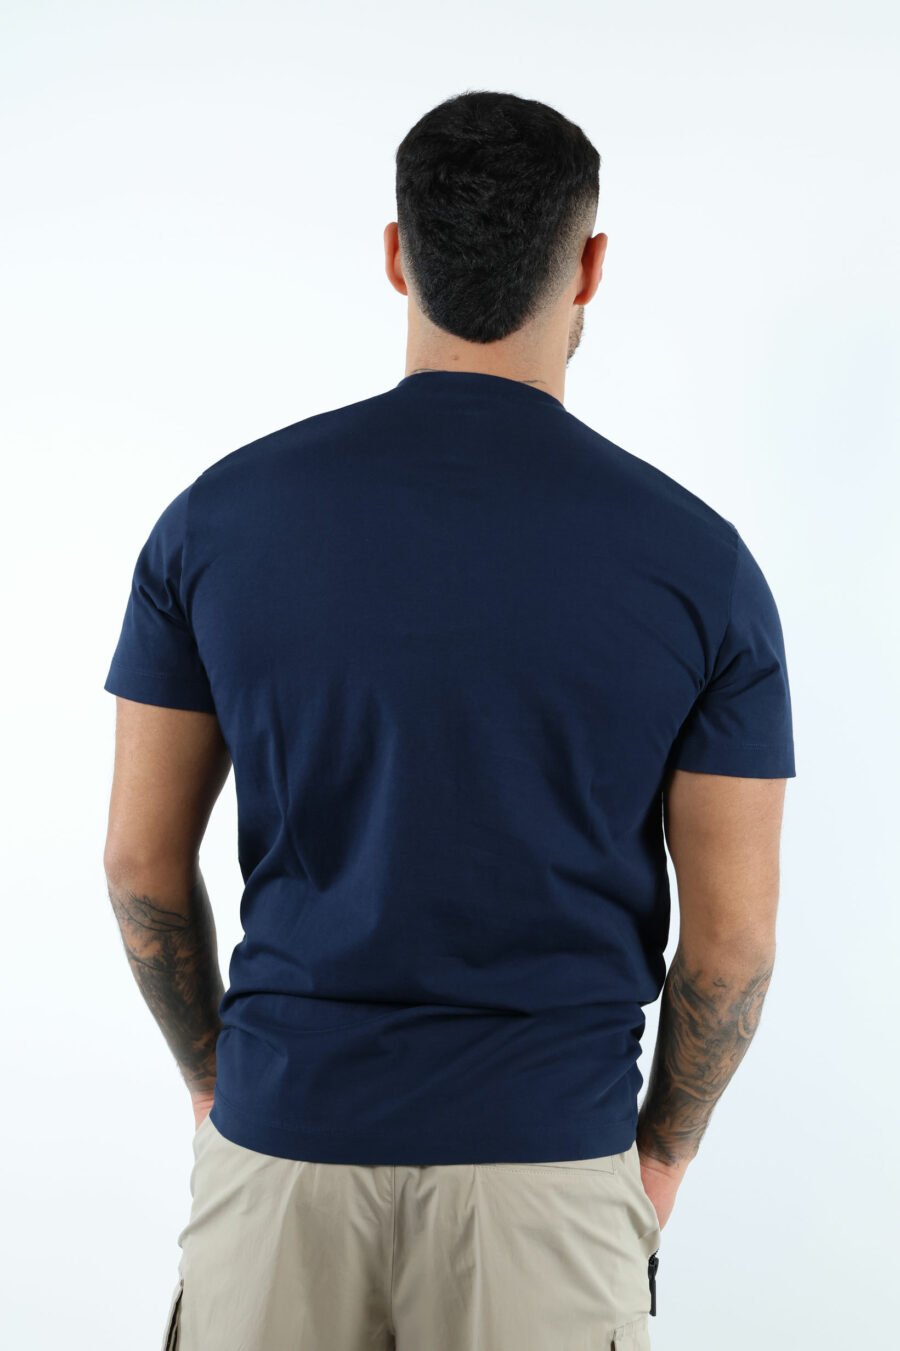 Camiseta azul oscura con minilogo "ceresio 9, milano" - 107101